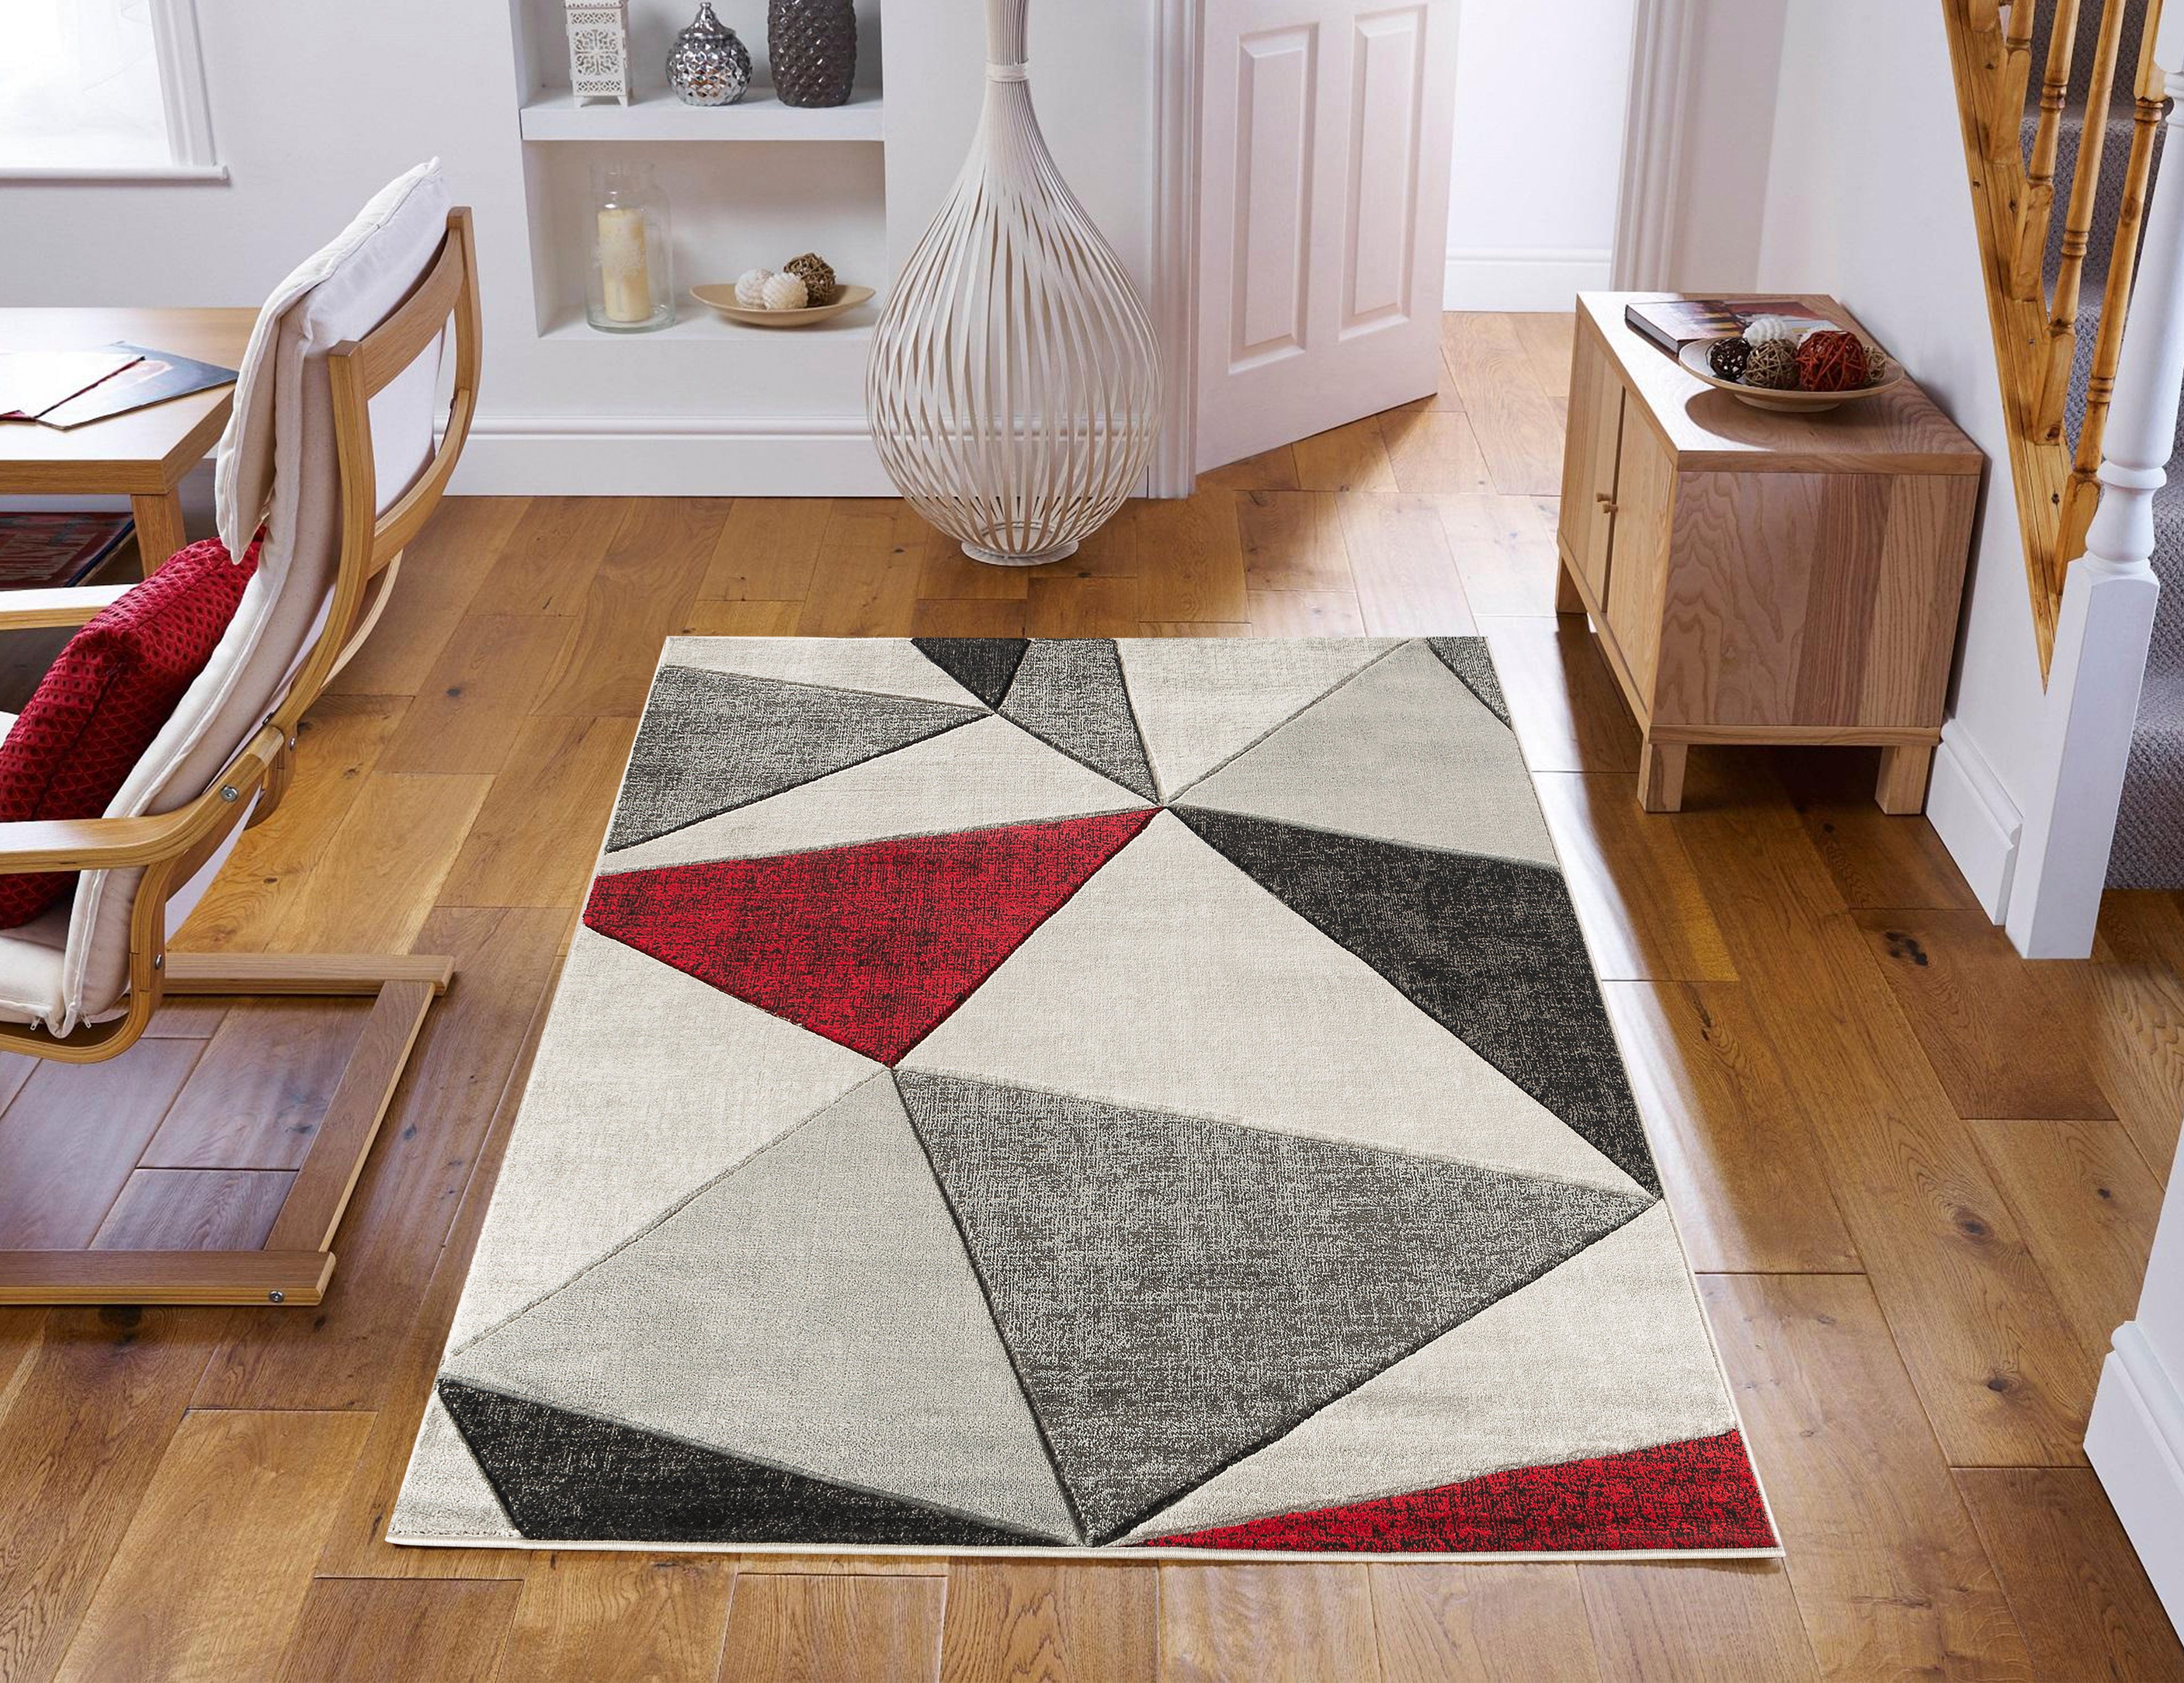 moderning living room rug